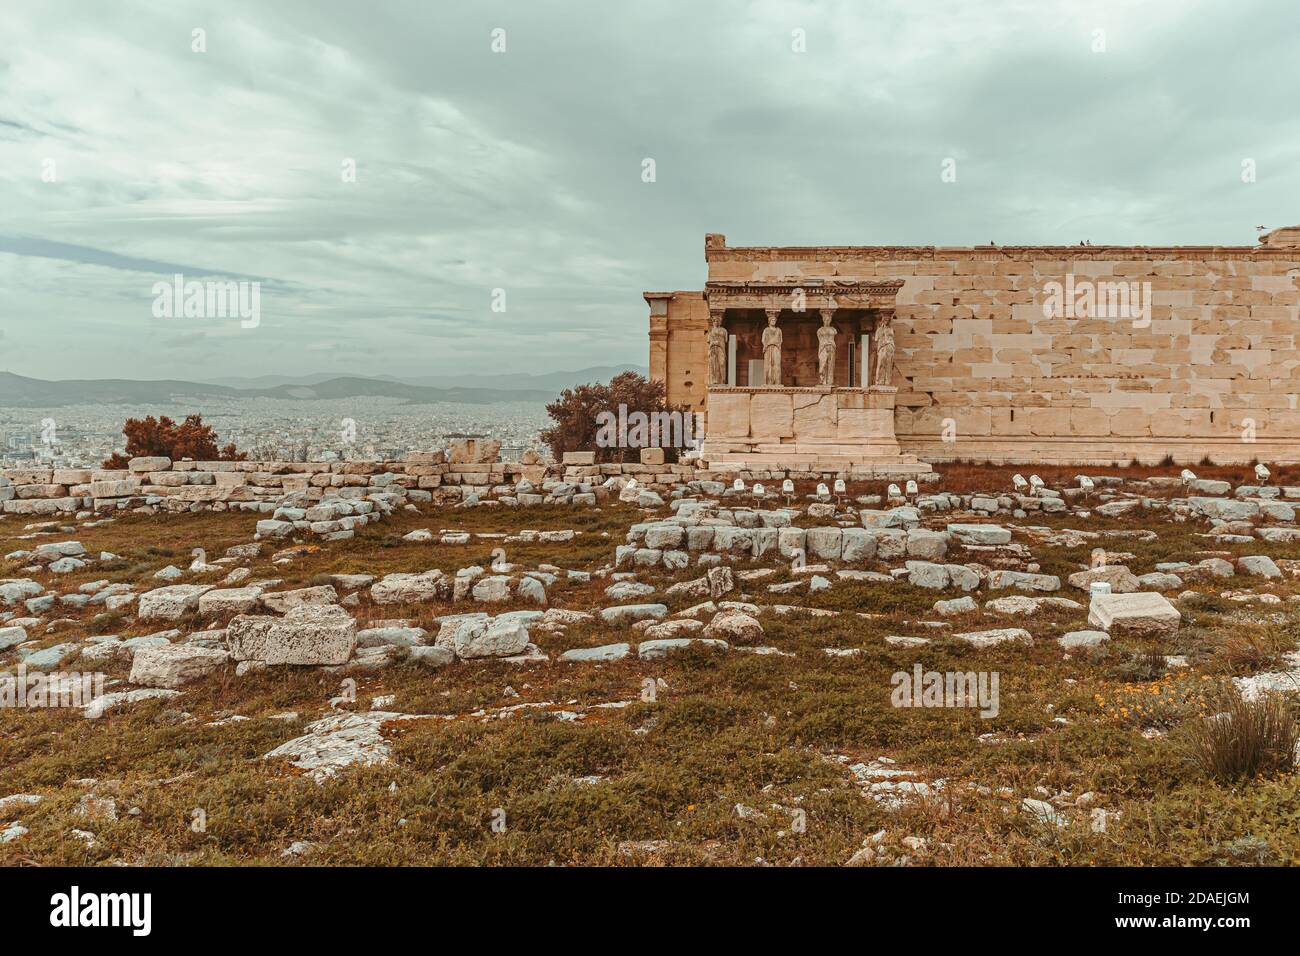 Parthenon temple on the Acropolis in Athens, Greece Stock Photo